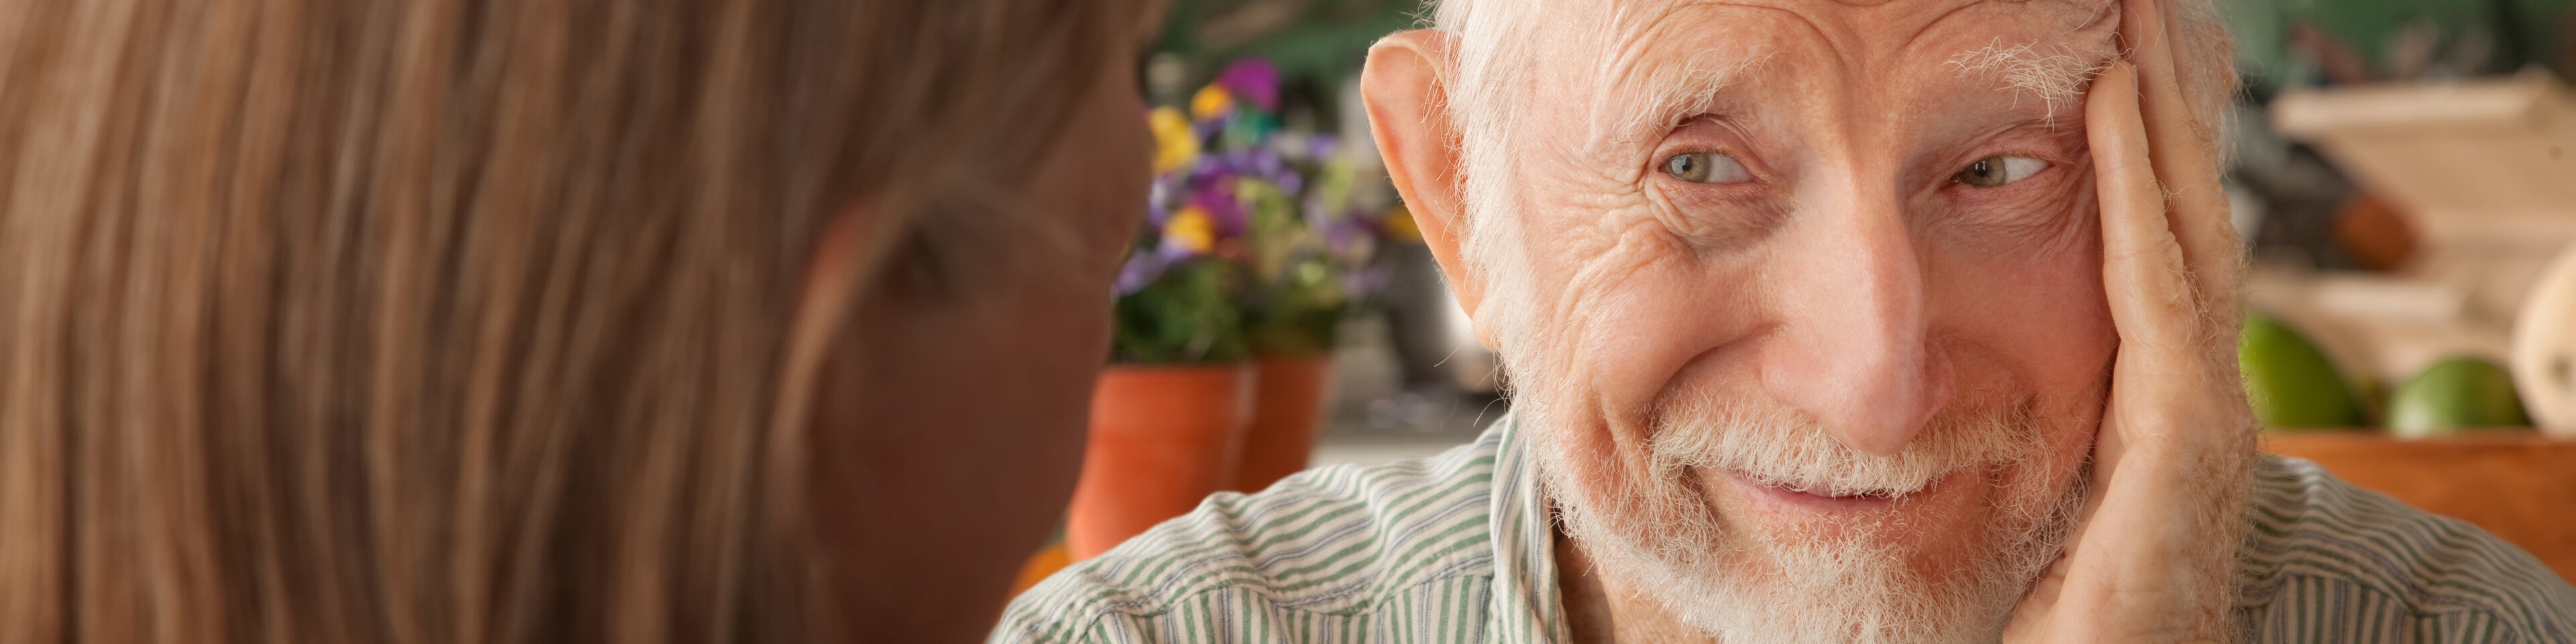 Älterer Mann lächelt Frau an | © Scott Grießel - Fotolia